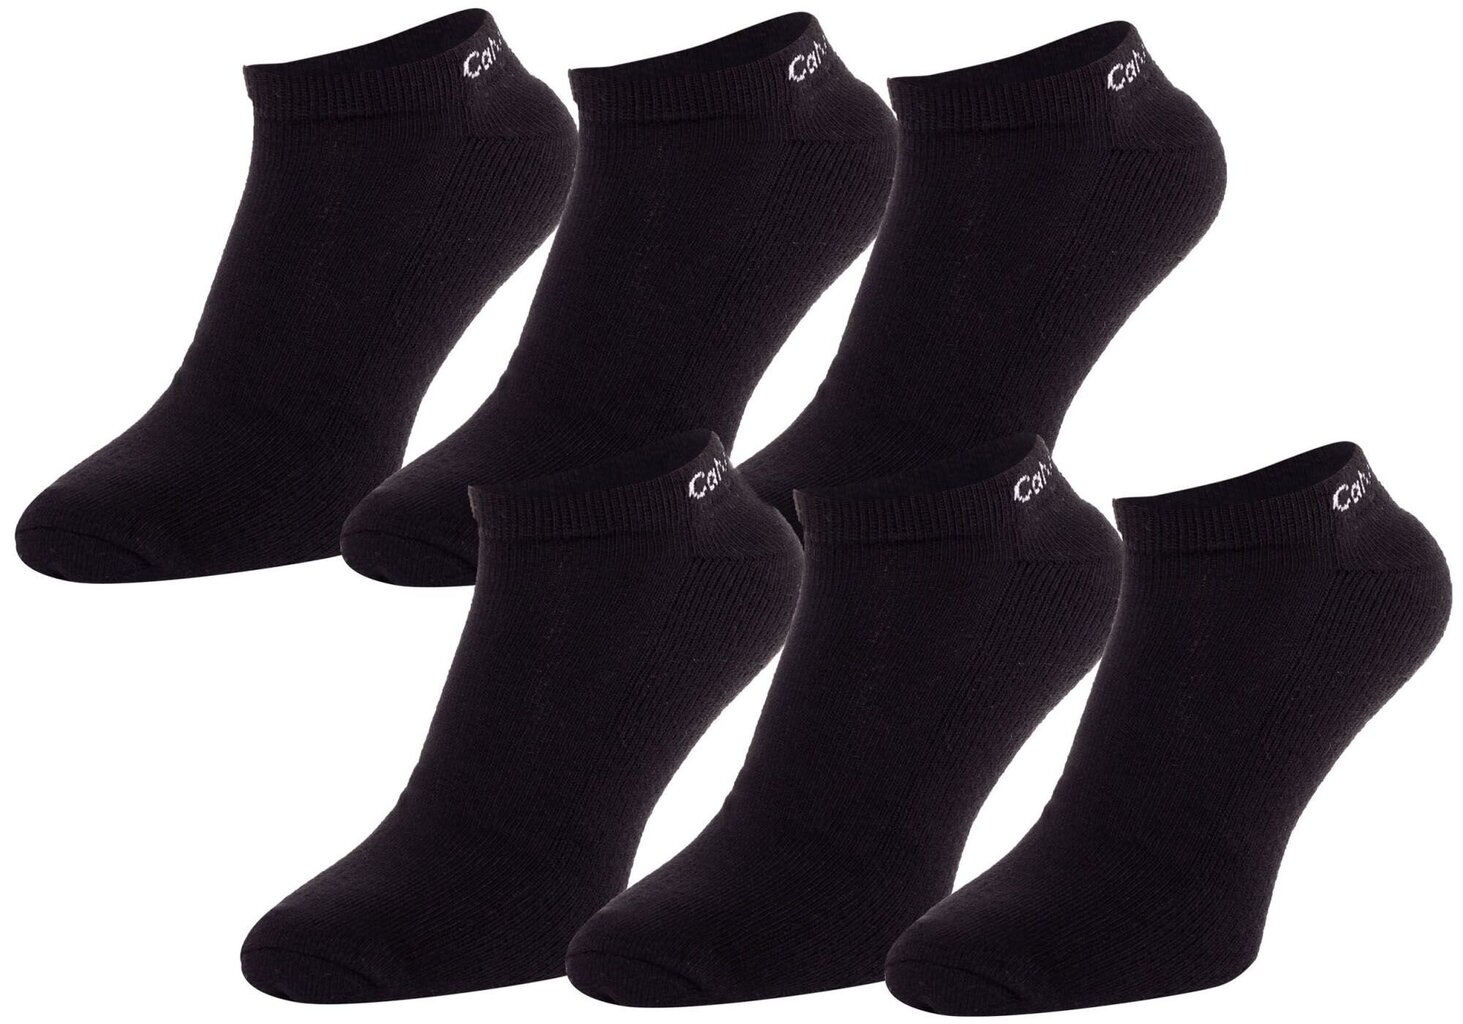 Vyriškos kojinės CALVIN KLEIN, 6 poros, juodos 701218720 001 39827 kaina ir informacija | Vyriškos kojinės | pigu.lt